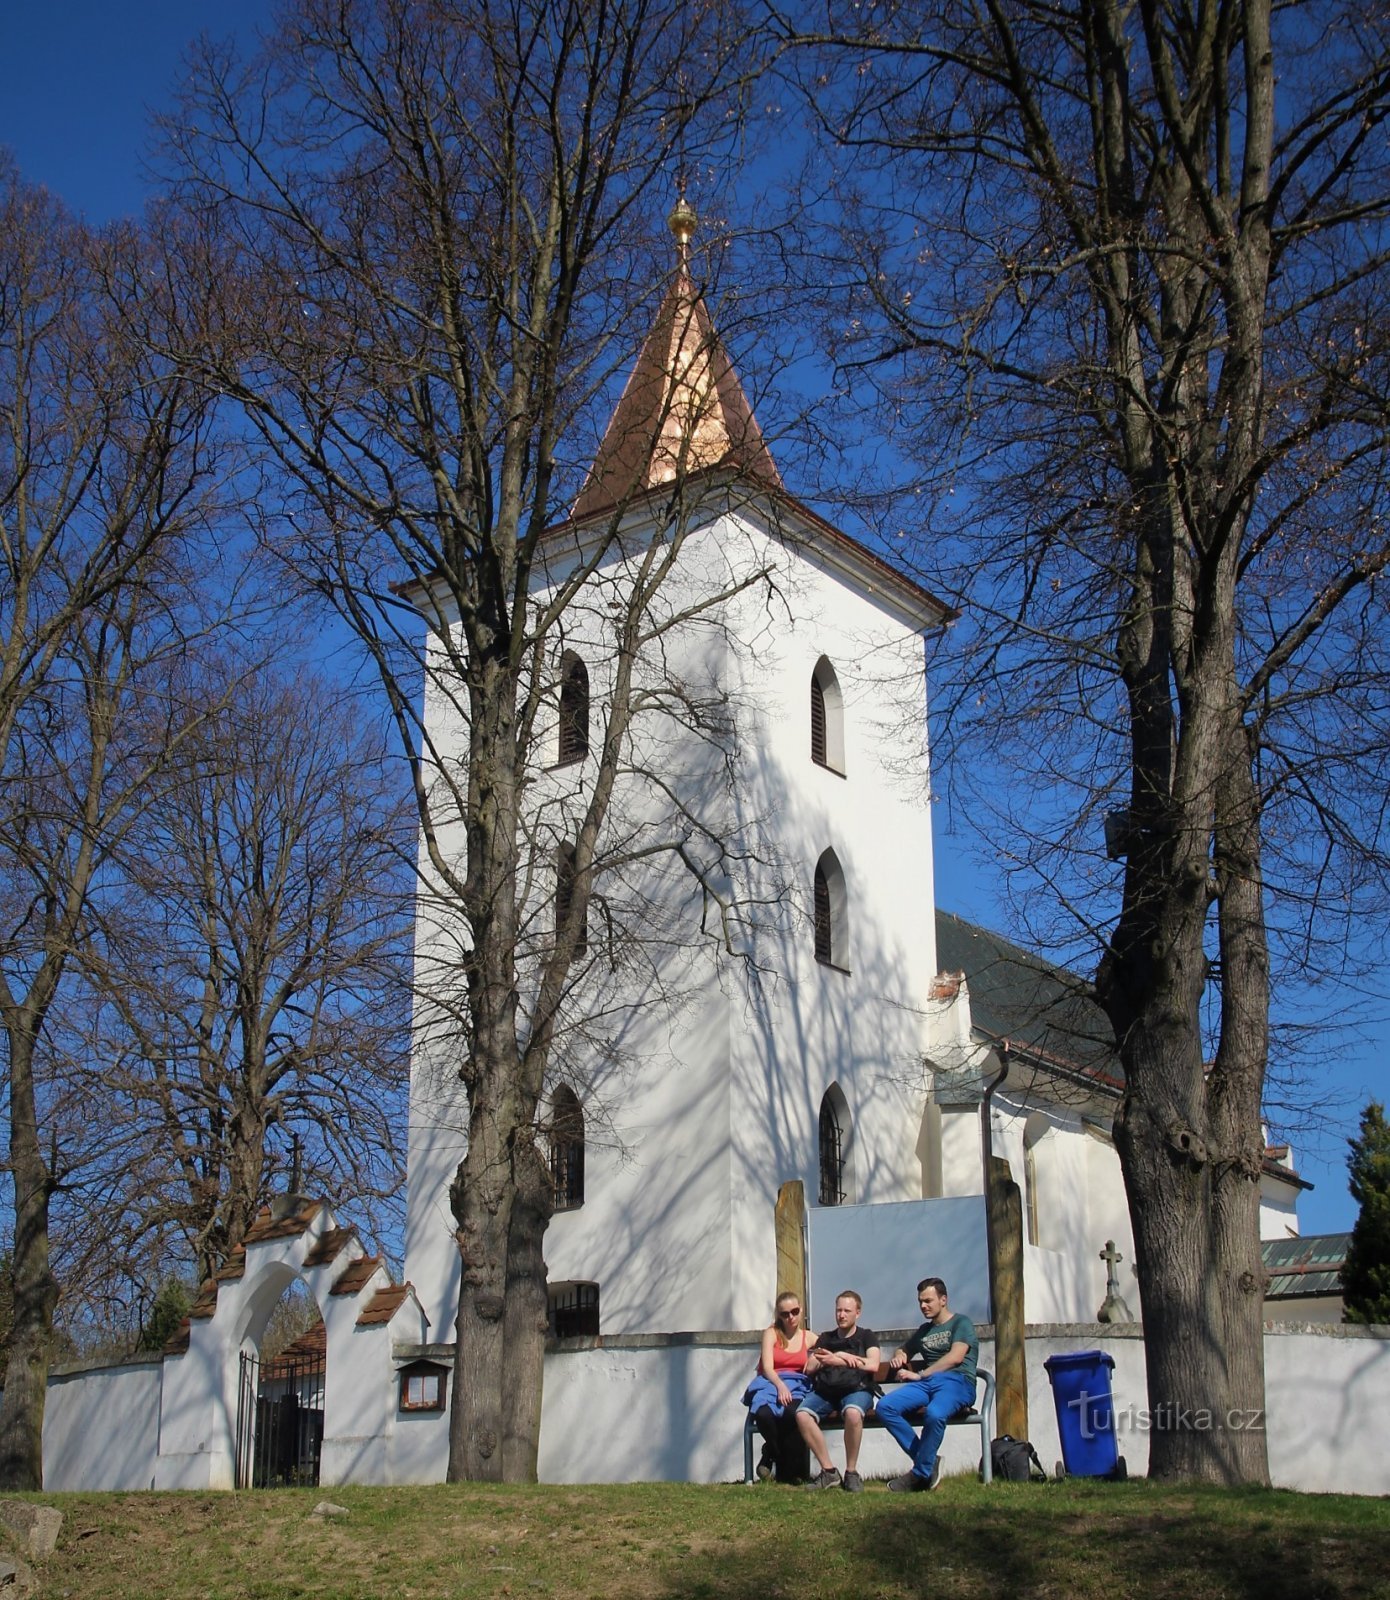 Лелековице - церковь св. Филипп и Джейкоб